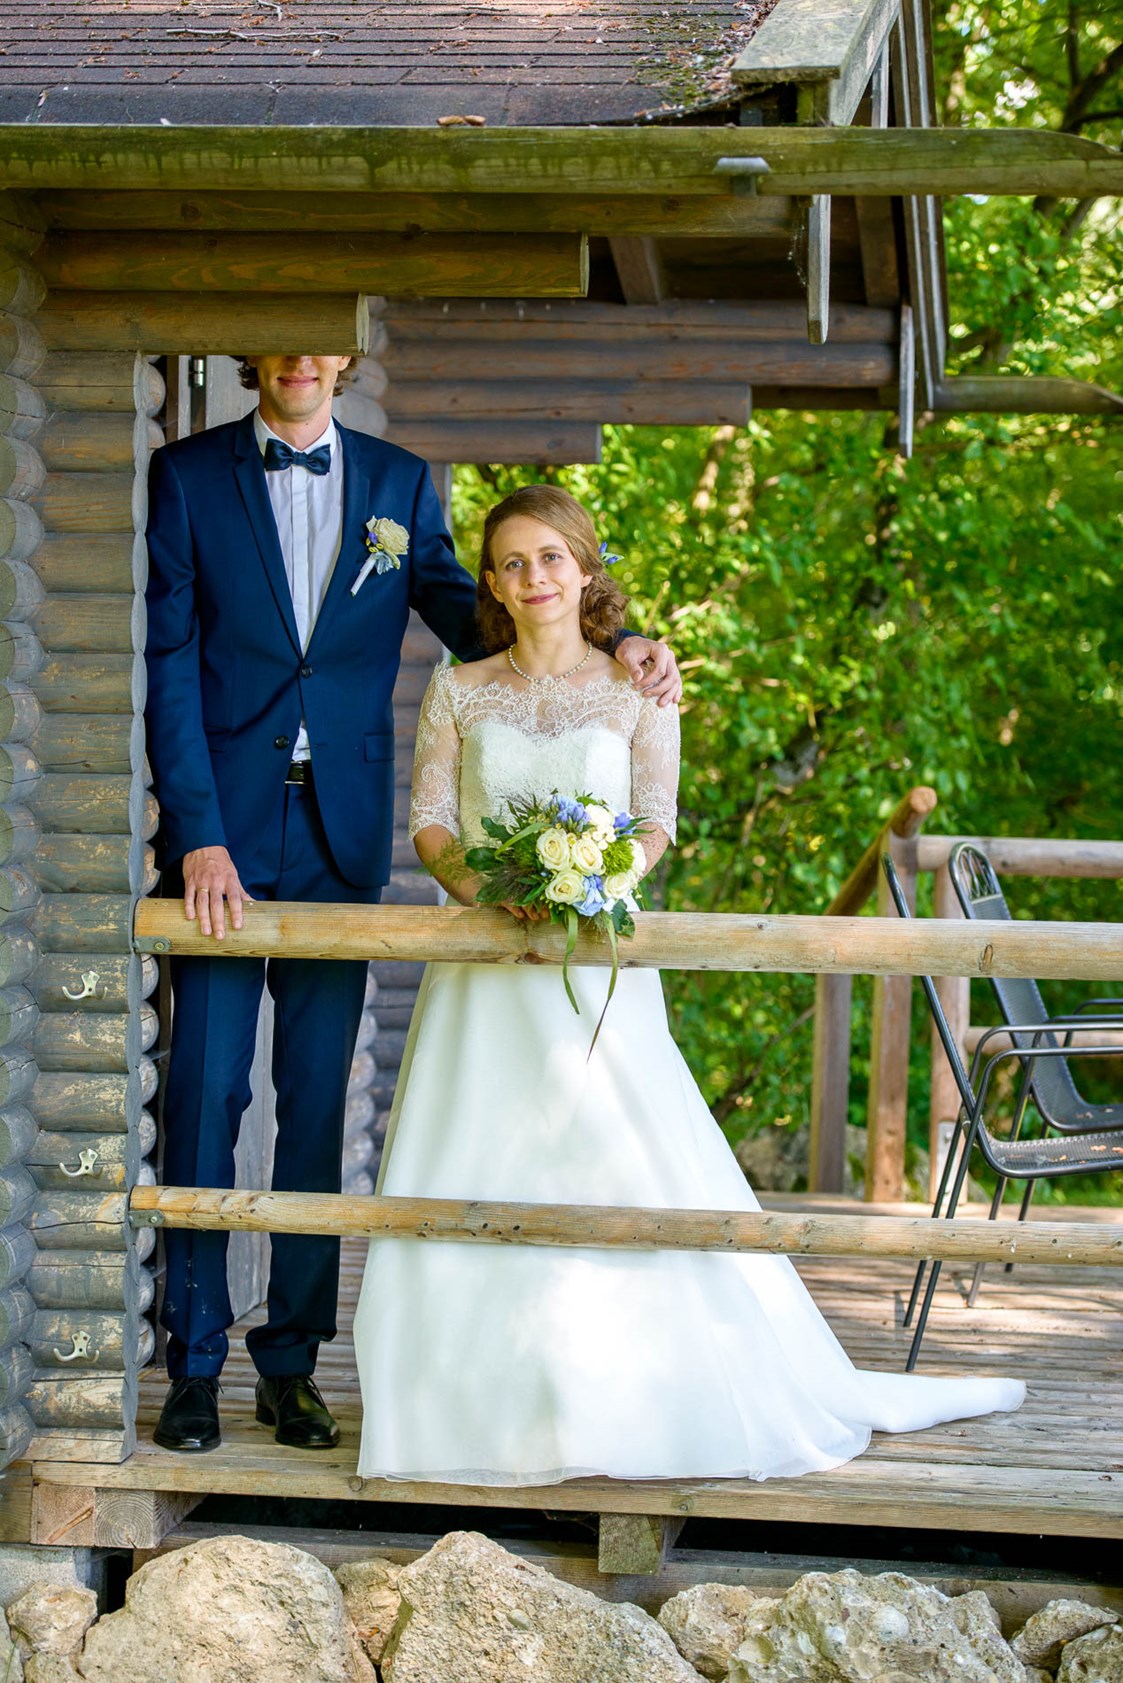 Hochzeitsfotograf: Dies ist das Lieblings-Hochzeitsfoto der ganzen Bräutigam-Familie geworden - Wolfgang Burkart Fotografie